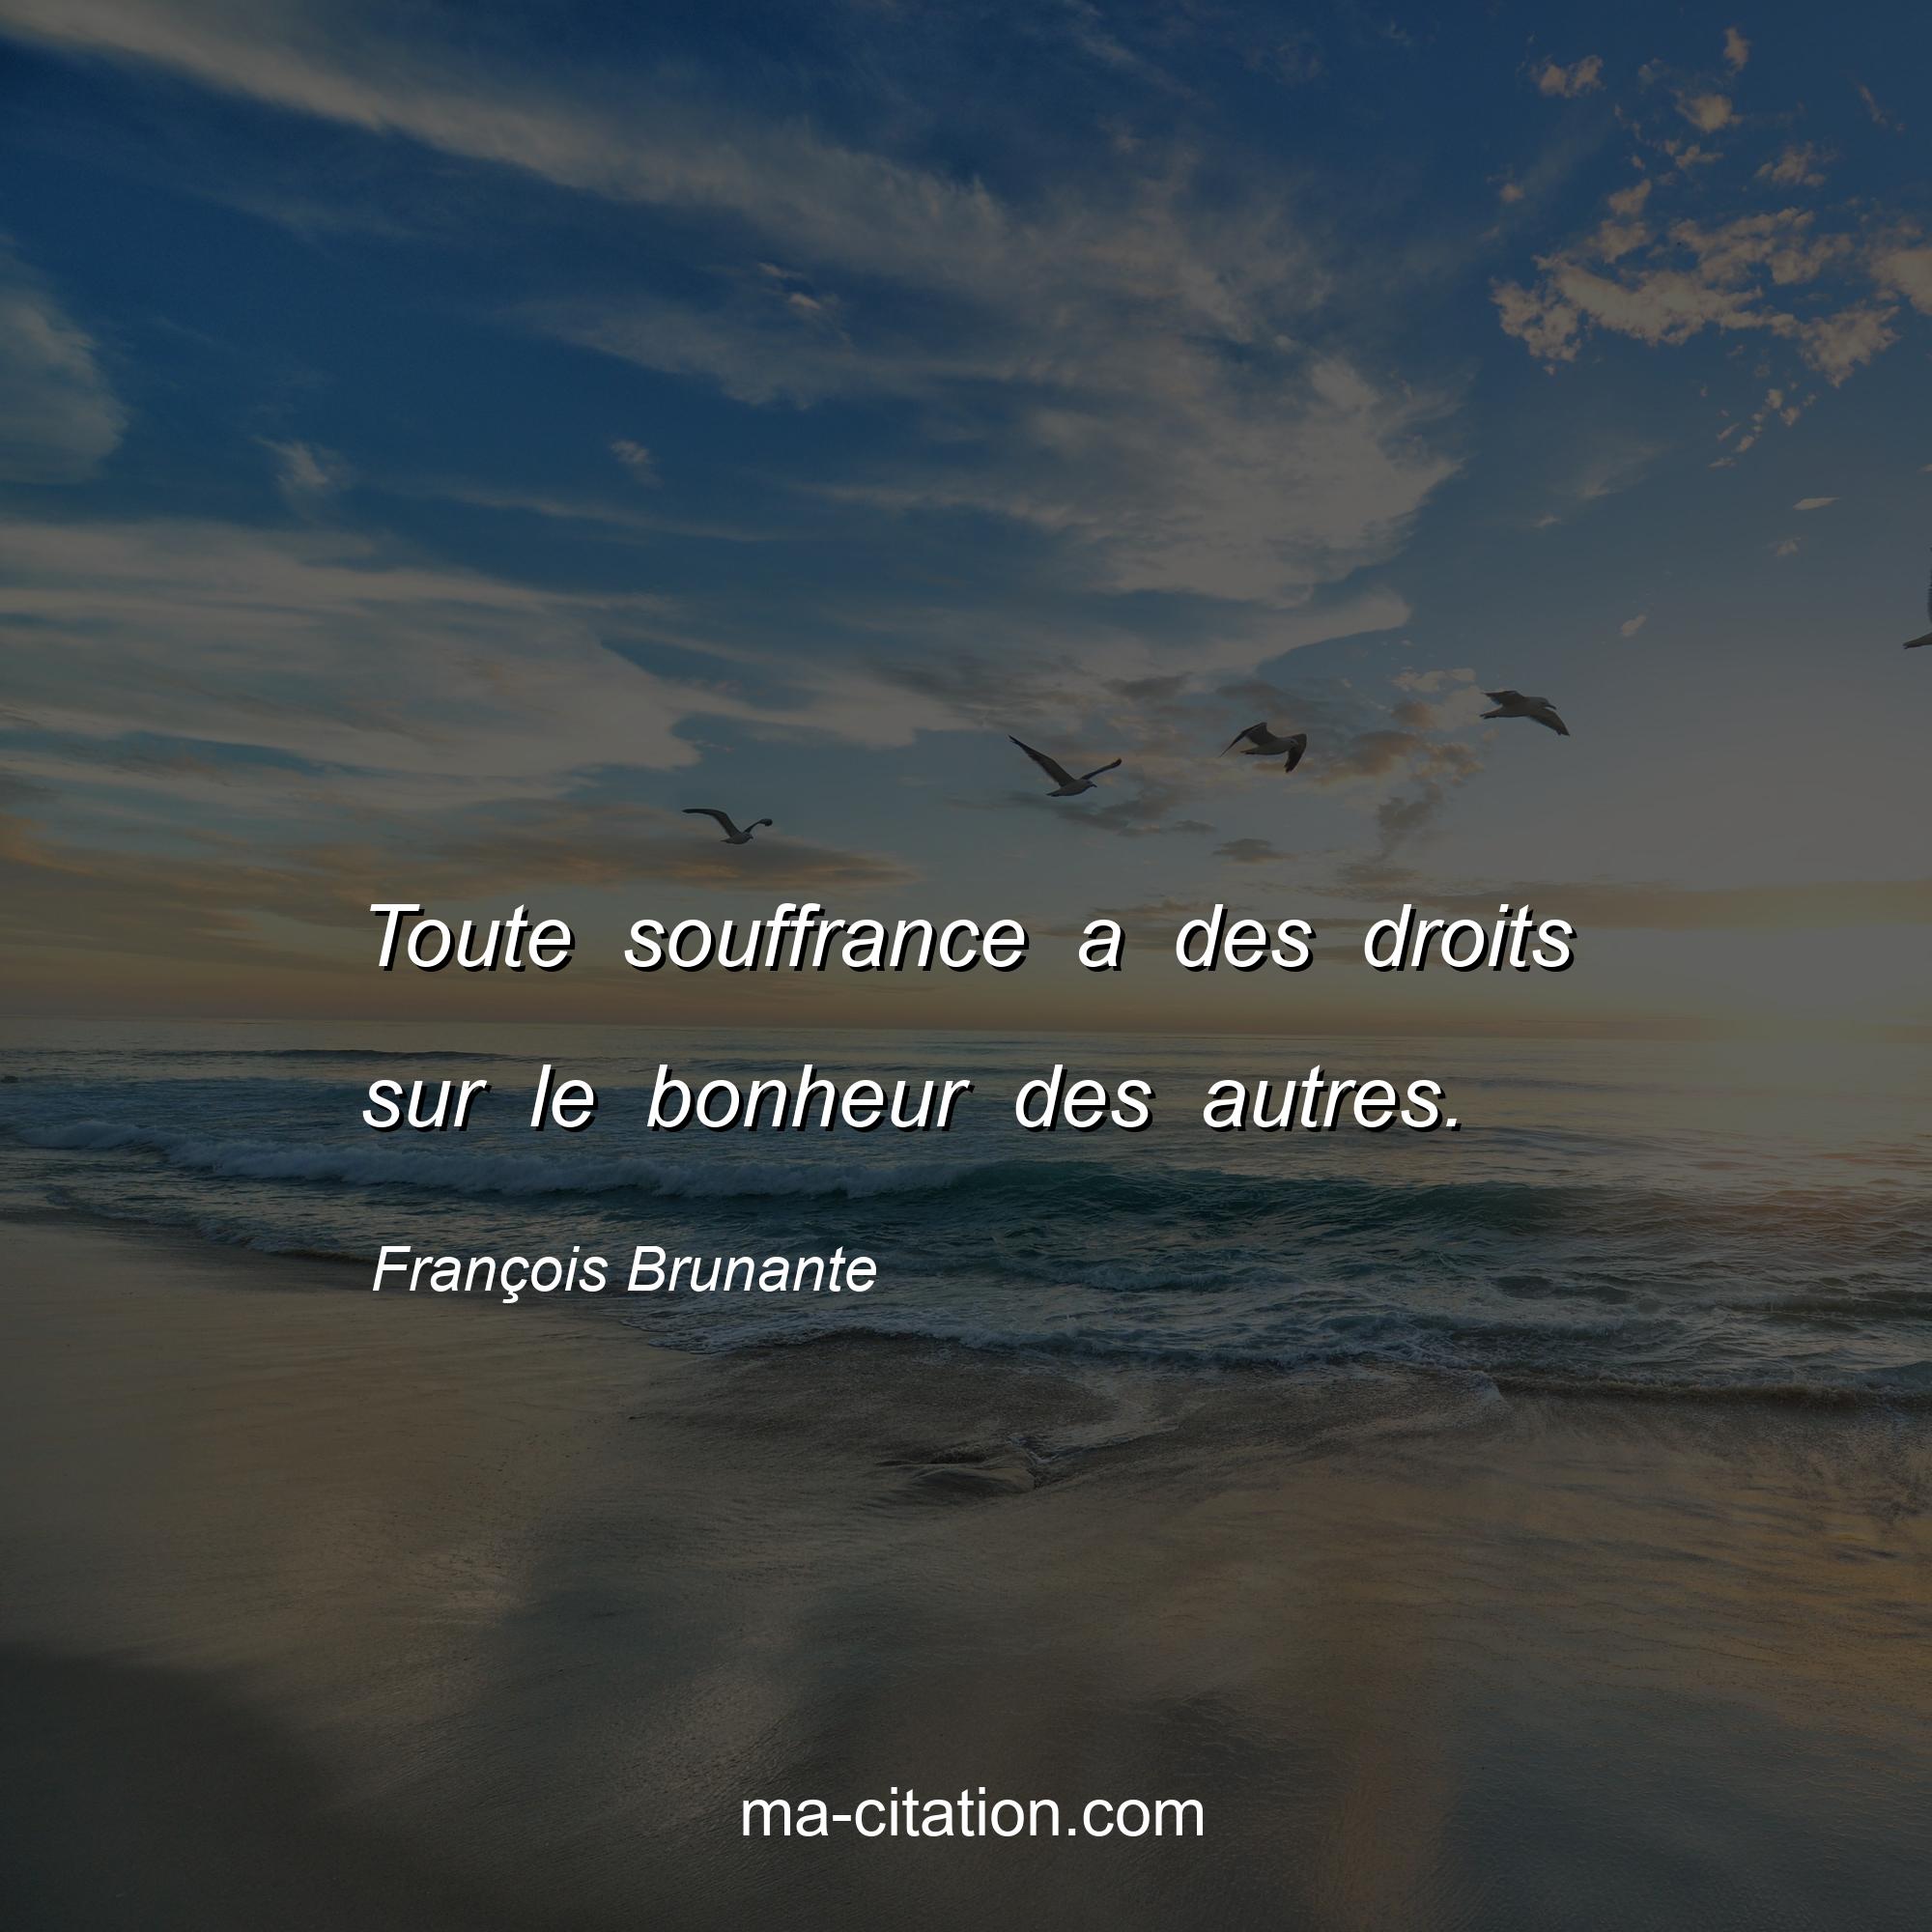 François Brunante : Toute souffrance a des droits sur le bonheur des autres.